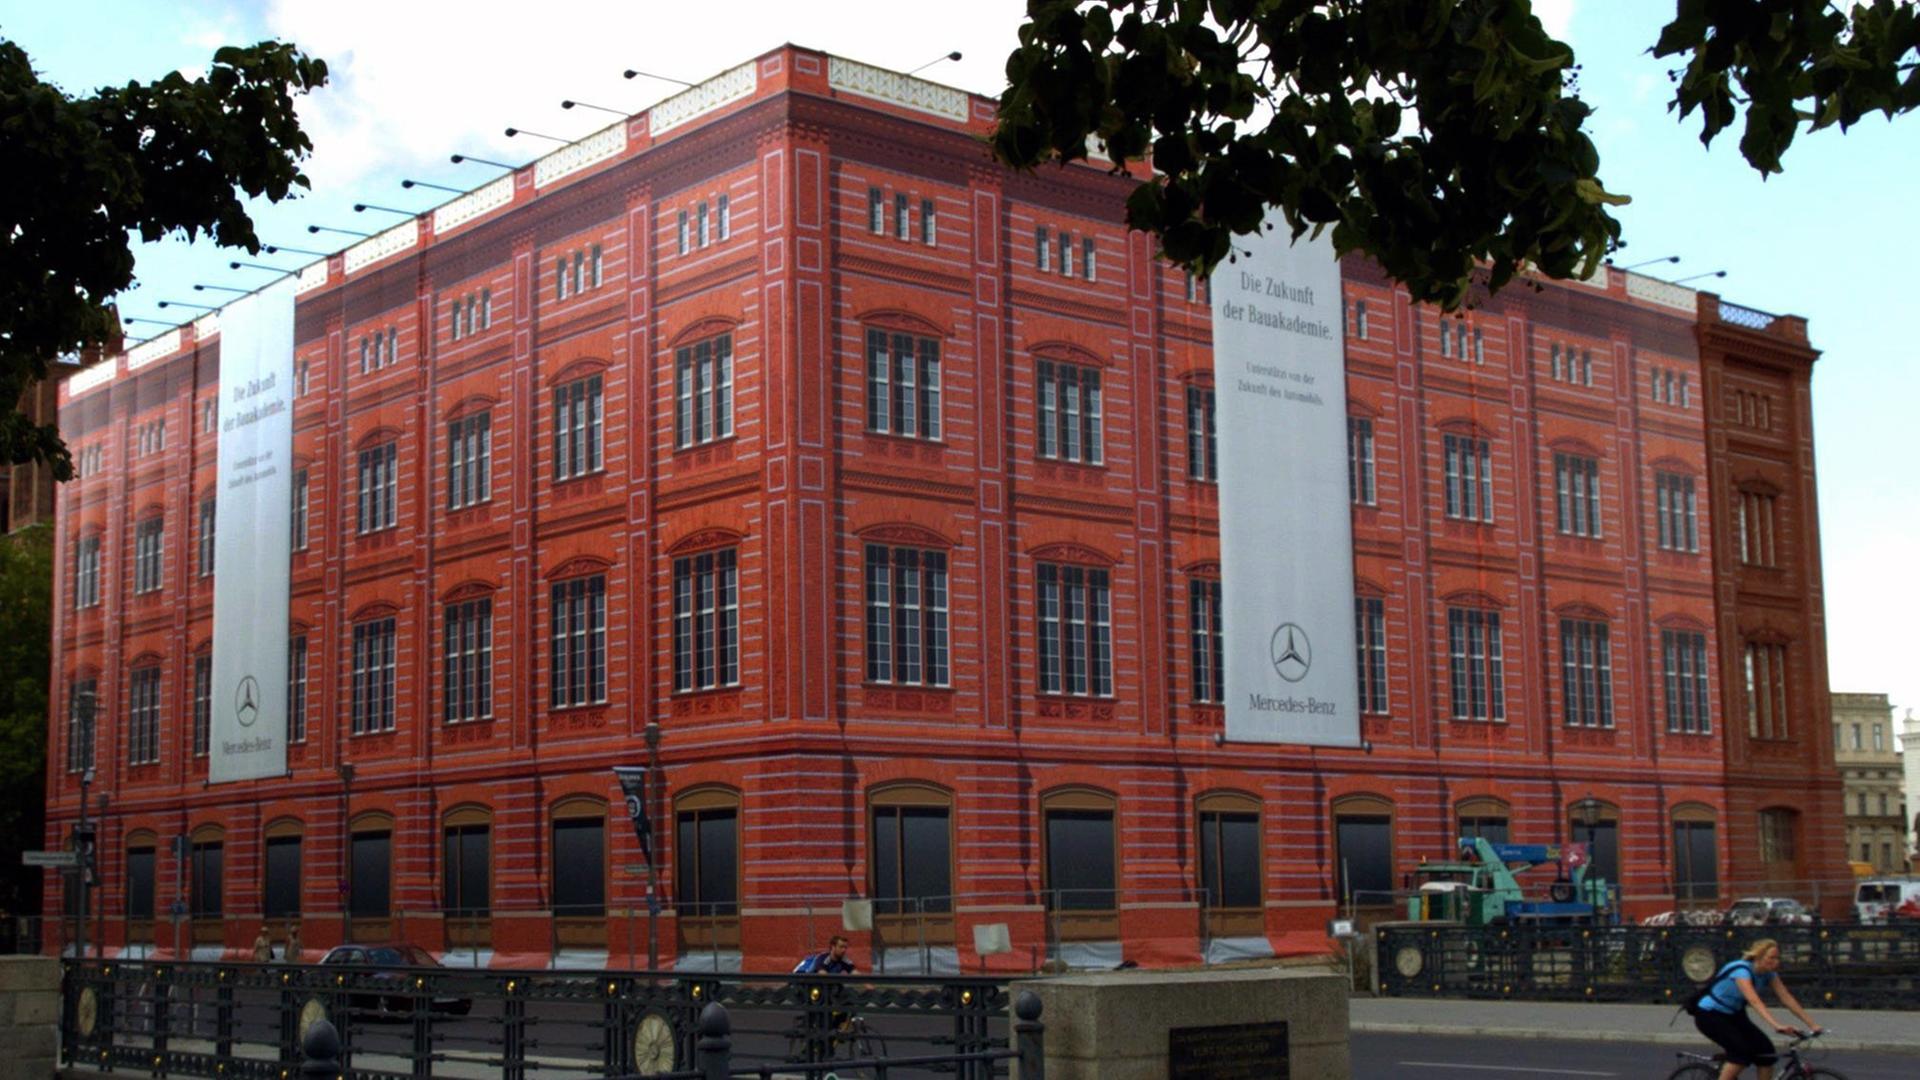 Schaufassade, auf der die von Karl Friedrich Schinkel 1832 errichtete Bauakadmie zu sehen ist, aufgenommen 2004 am Berliner Schlossplatz